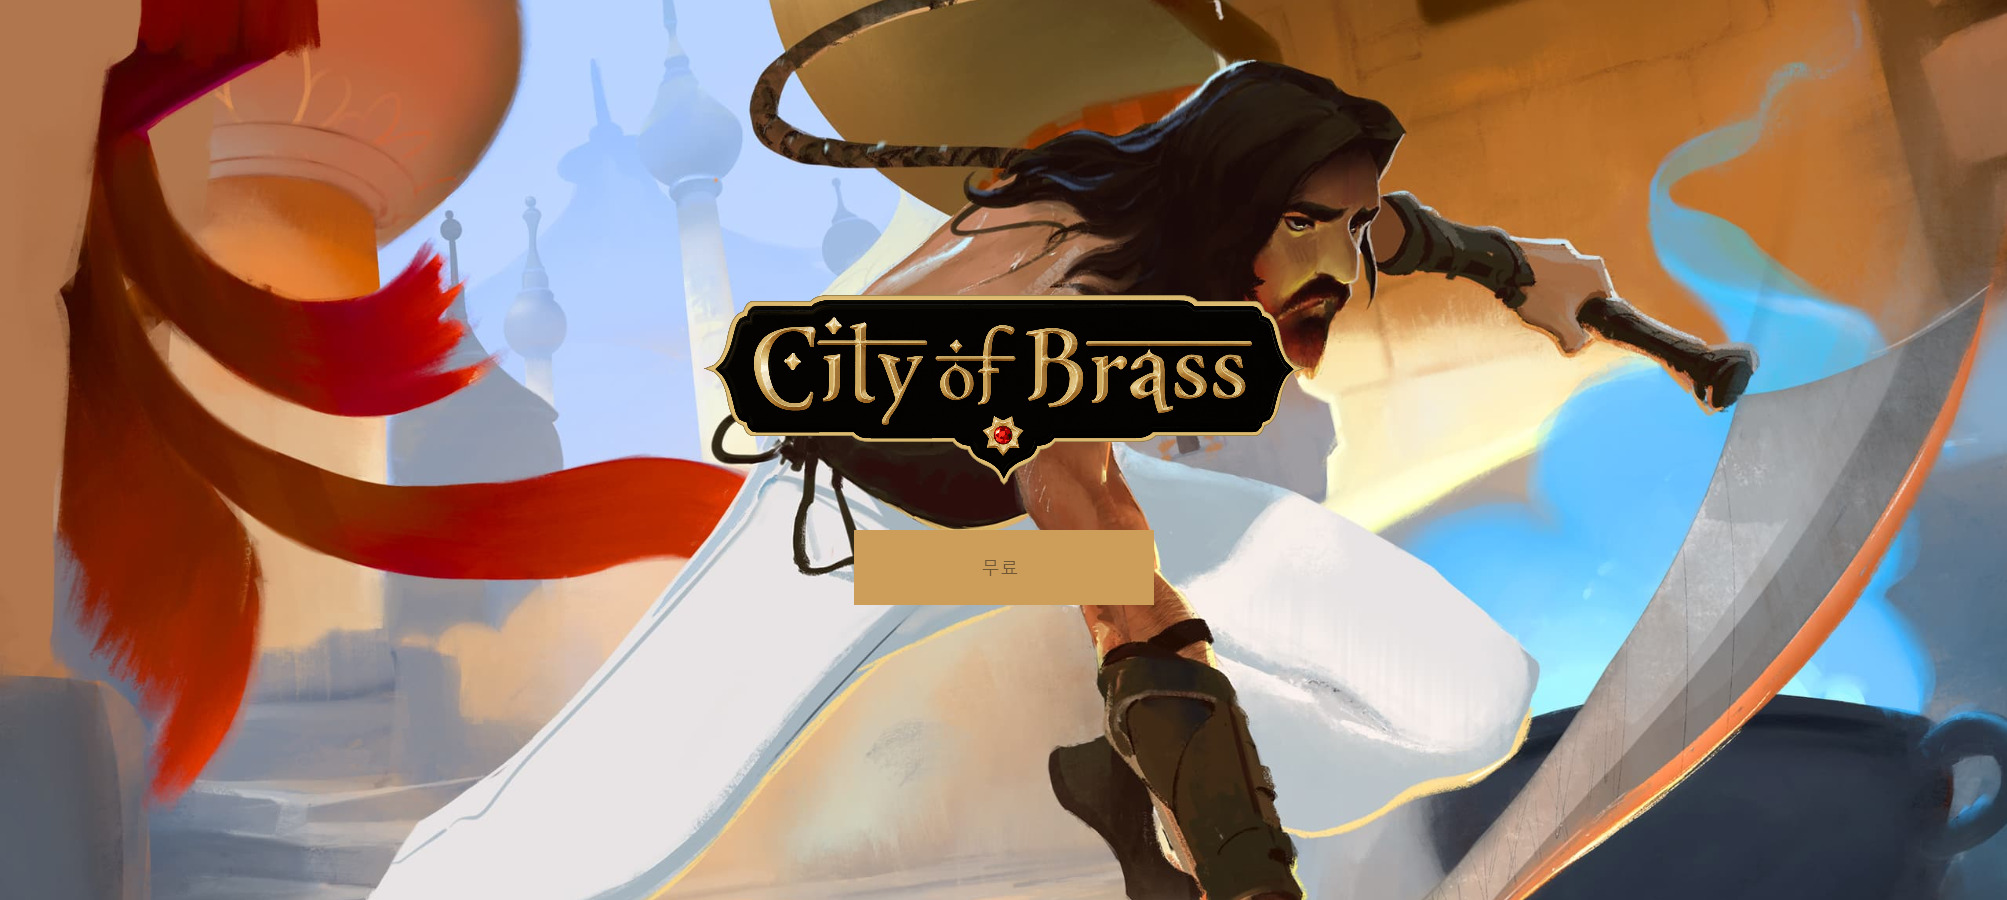 Screenshot_2019-05-30 City of Brass - 무시무시한 이빨을 드러낸 도시.png